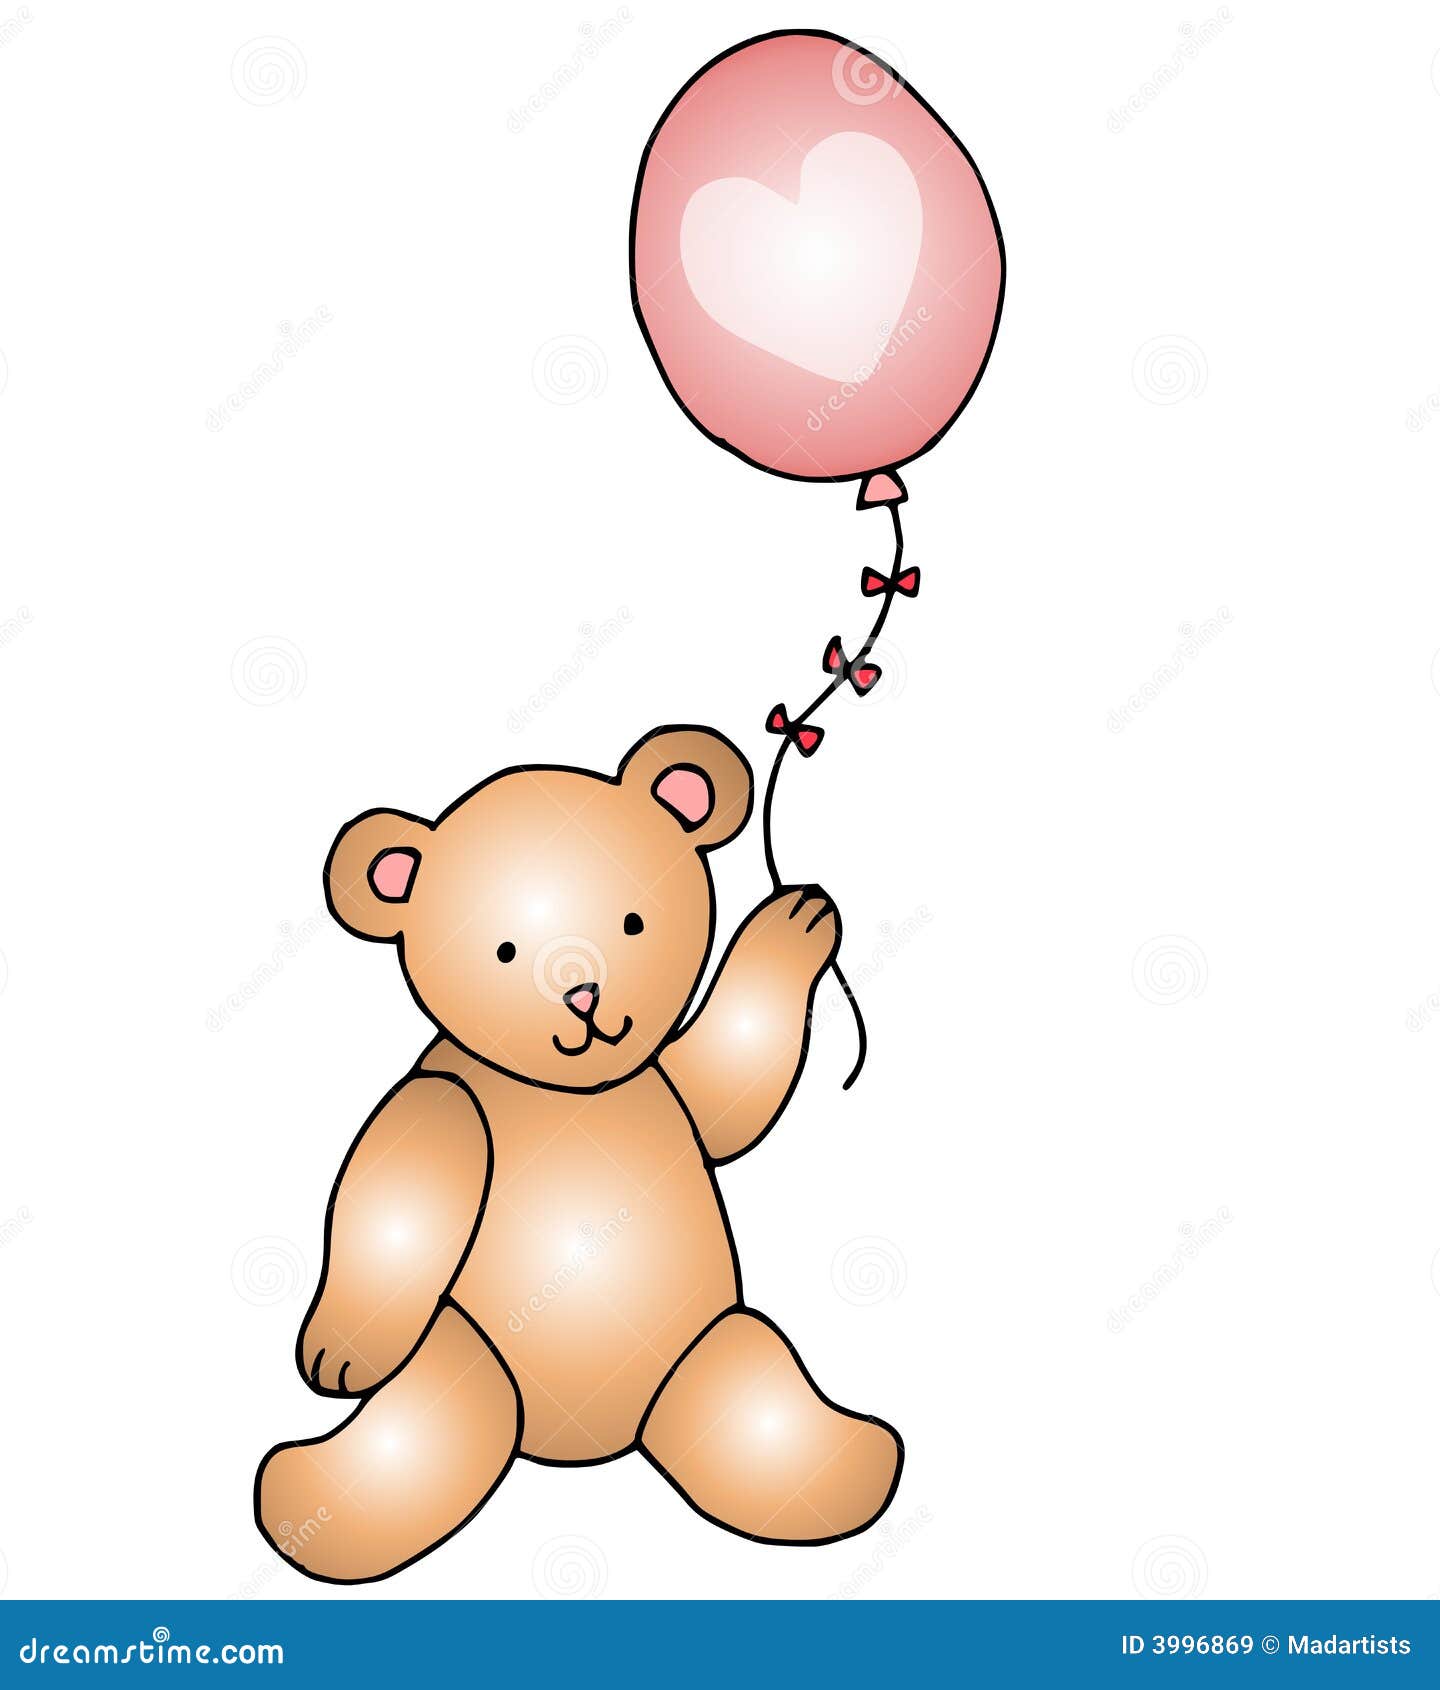 teddy bear with heart clipart - photo #48